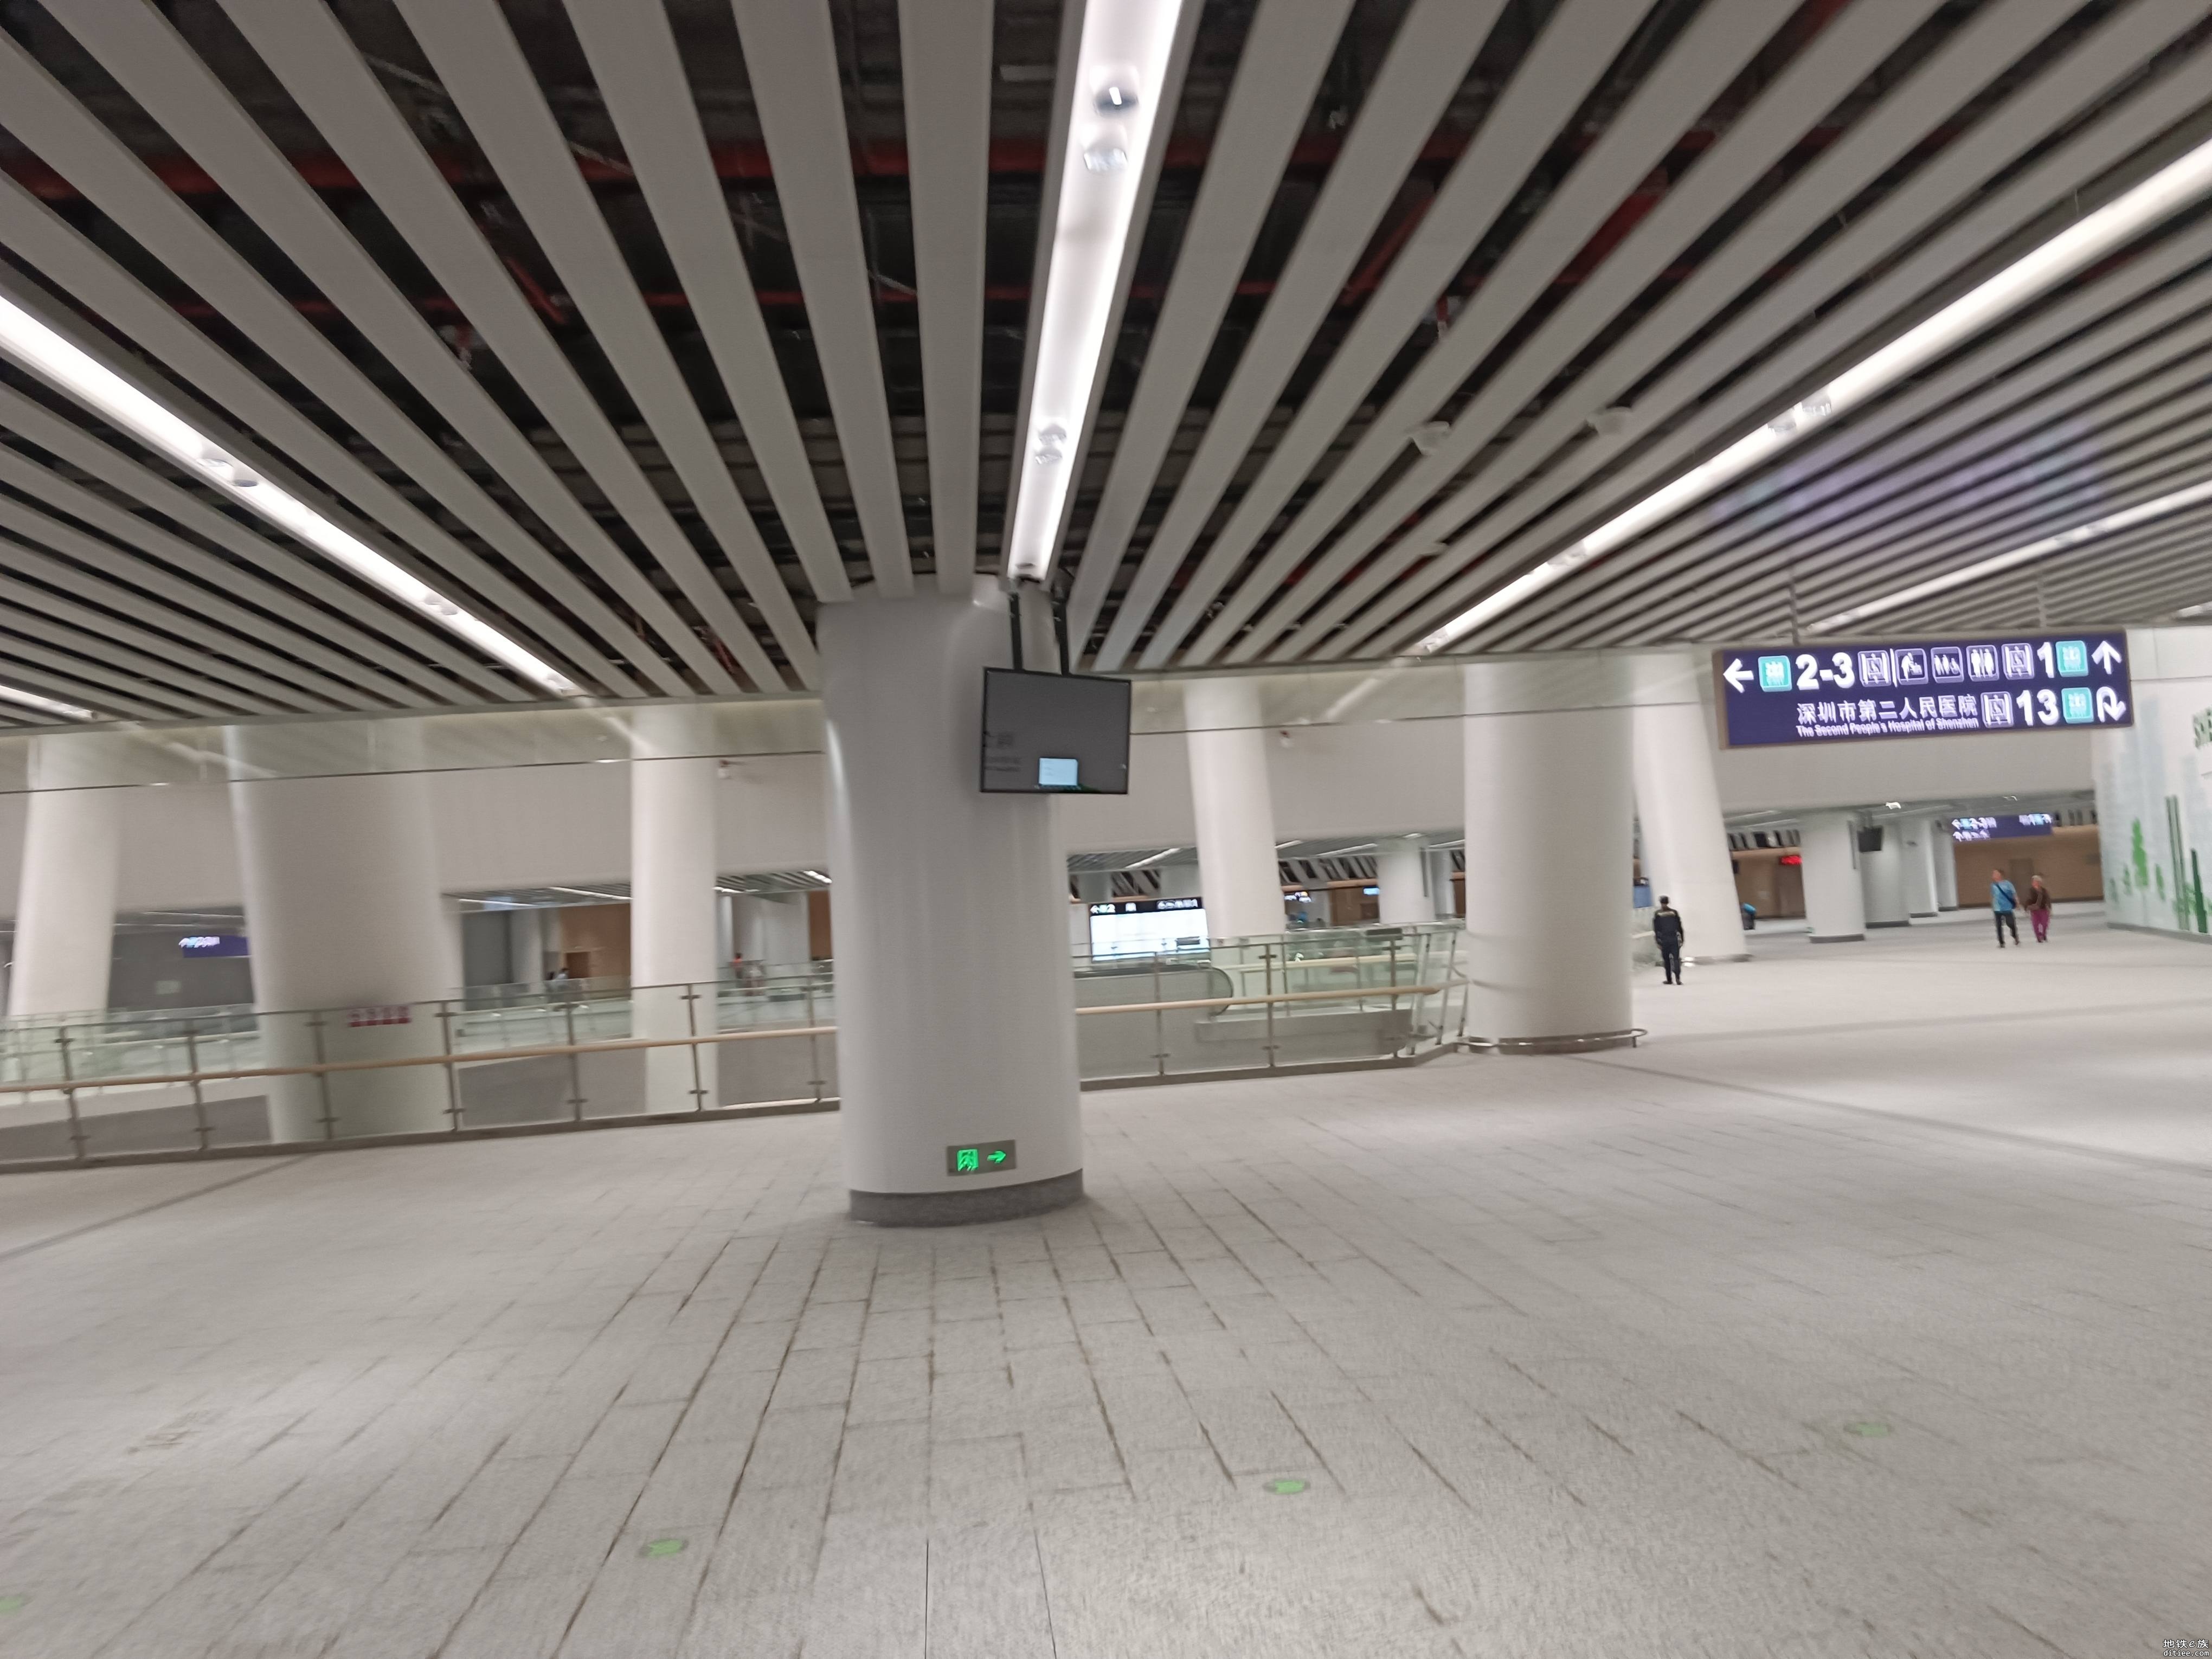 [皮鸭运转 已完工] 深圳地铁14号线开通次日运转帖(约840图)